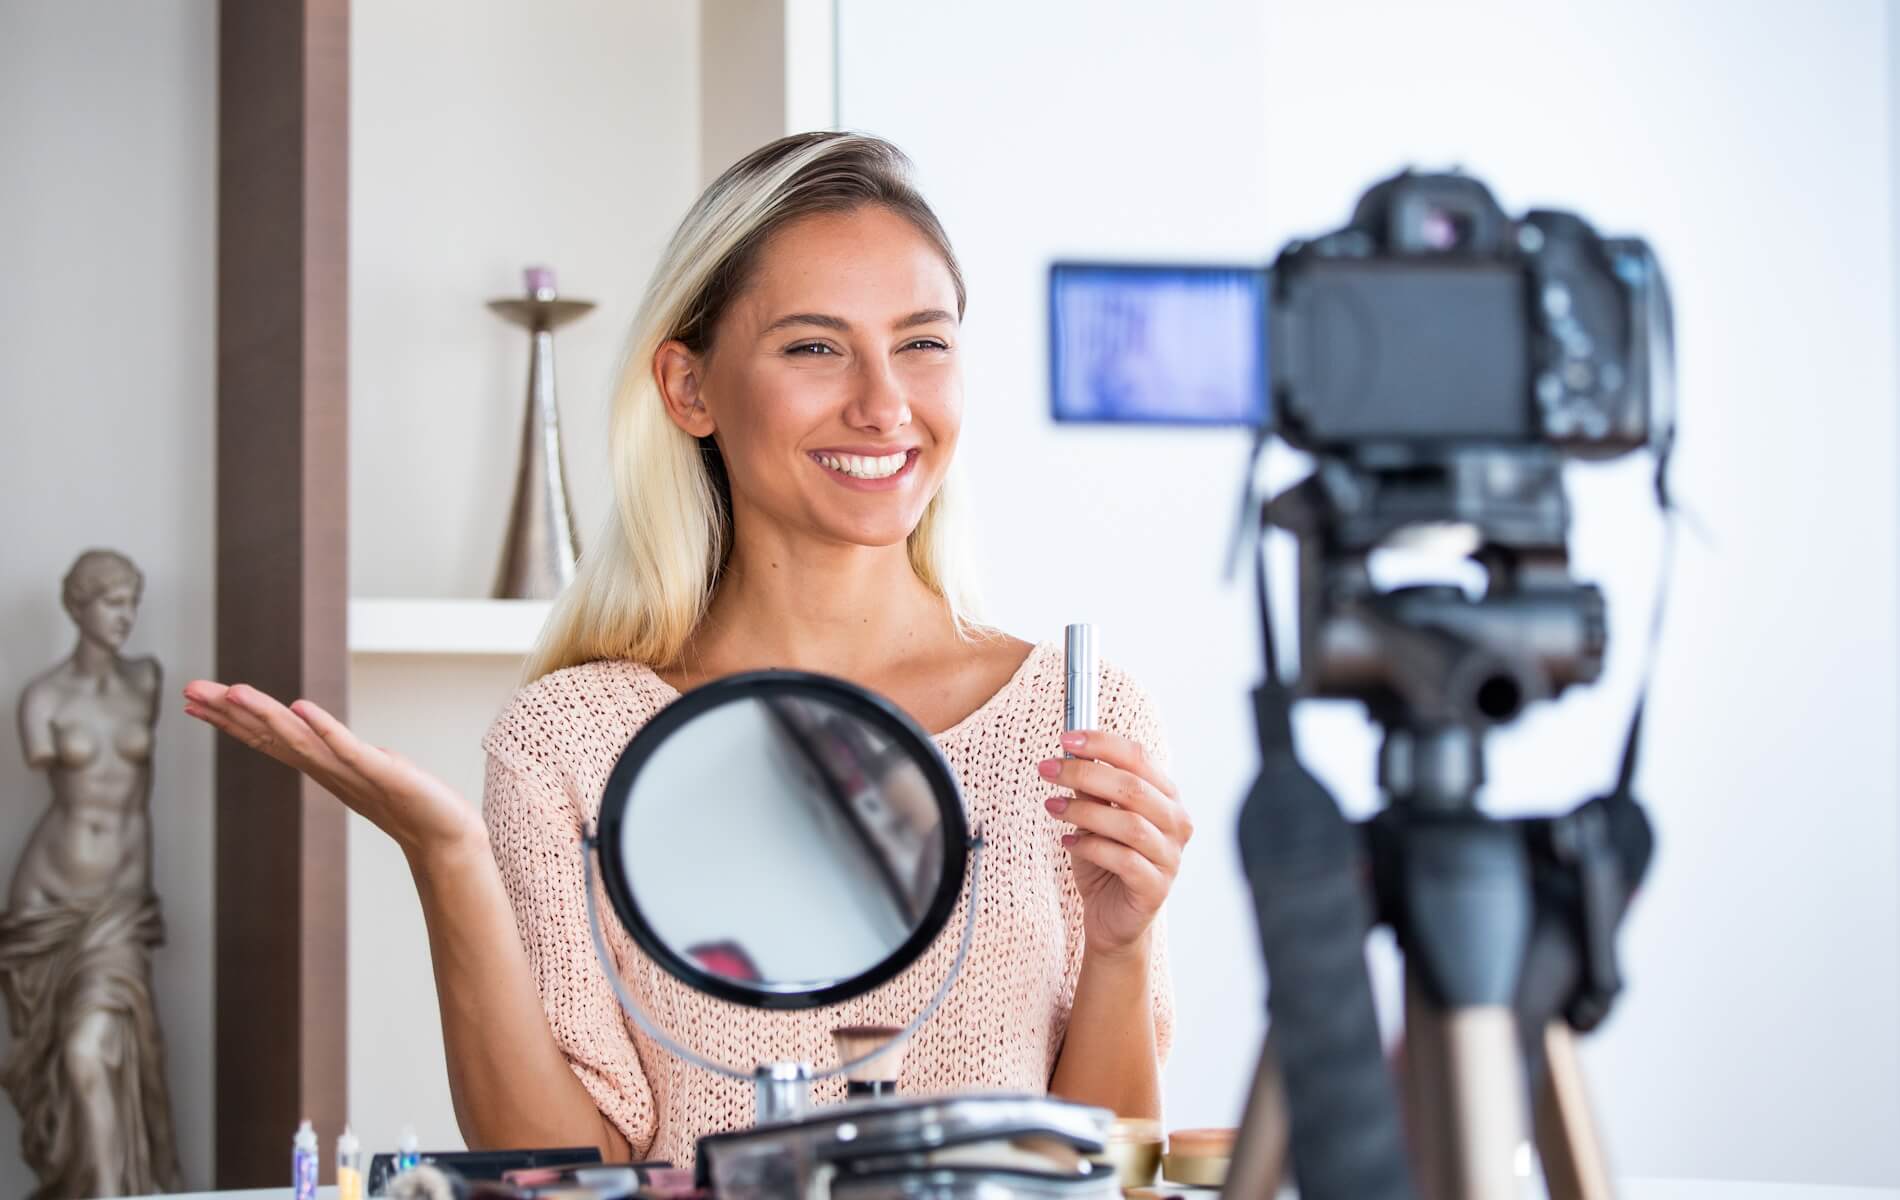 An influencer recording a make-up video